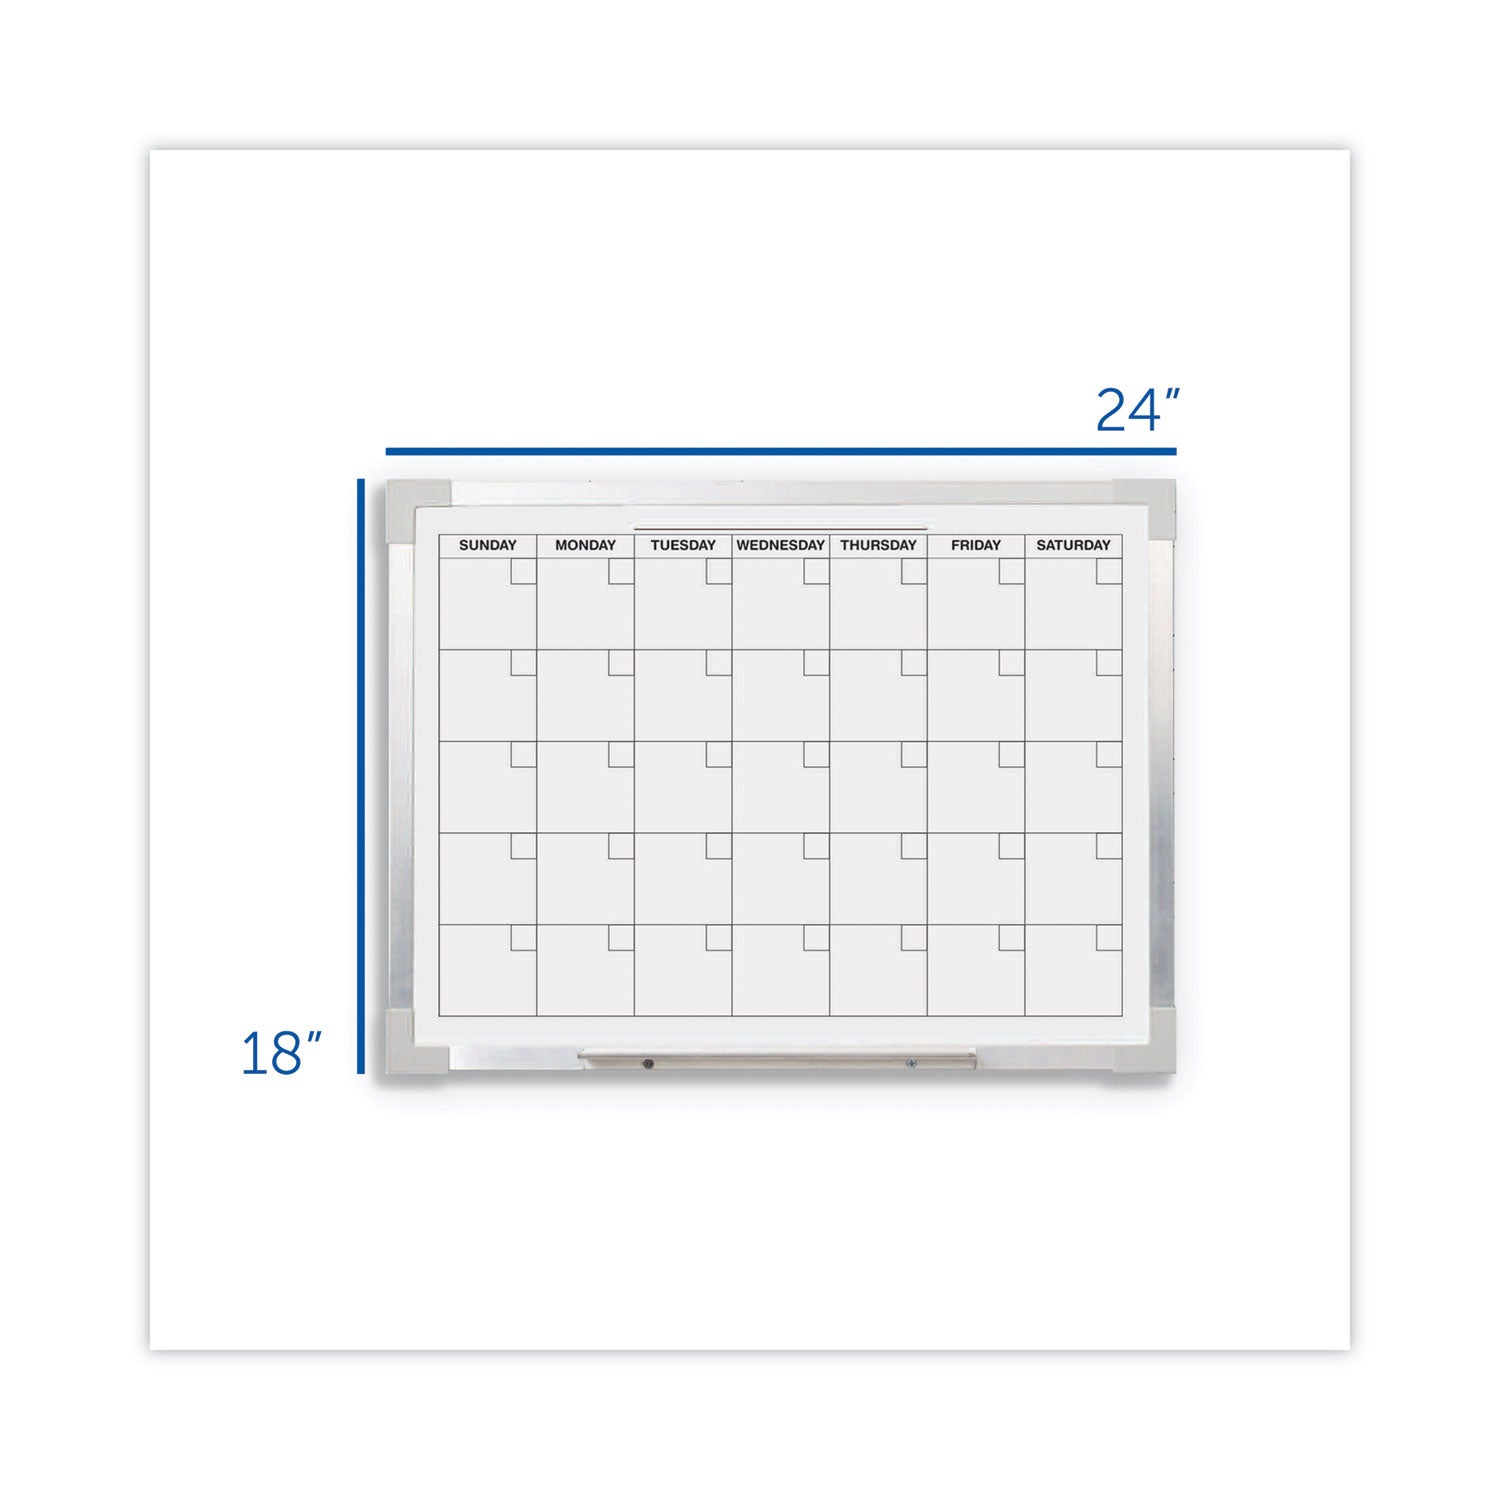 framed-calendar-dry-erase-board-24-x-18-white-surface-silver-aluminum-frame_flp17302 - 3